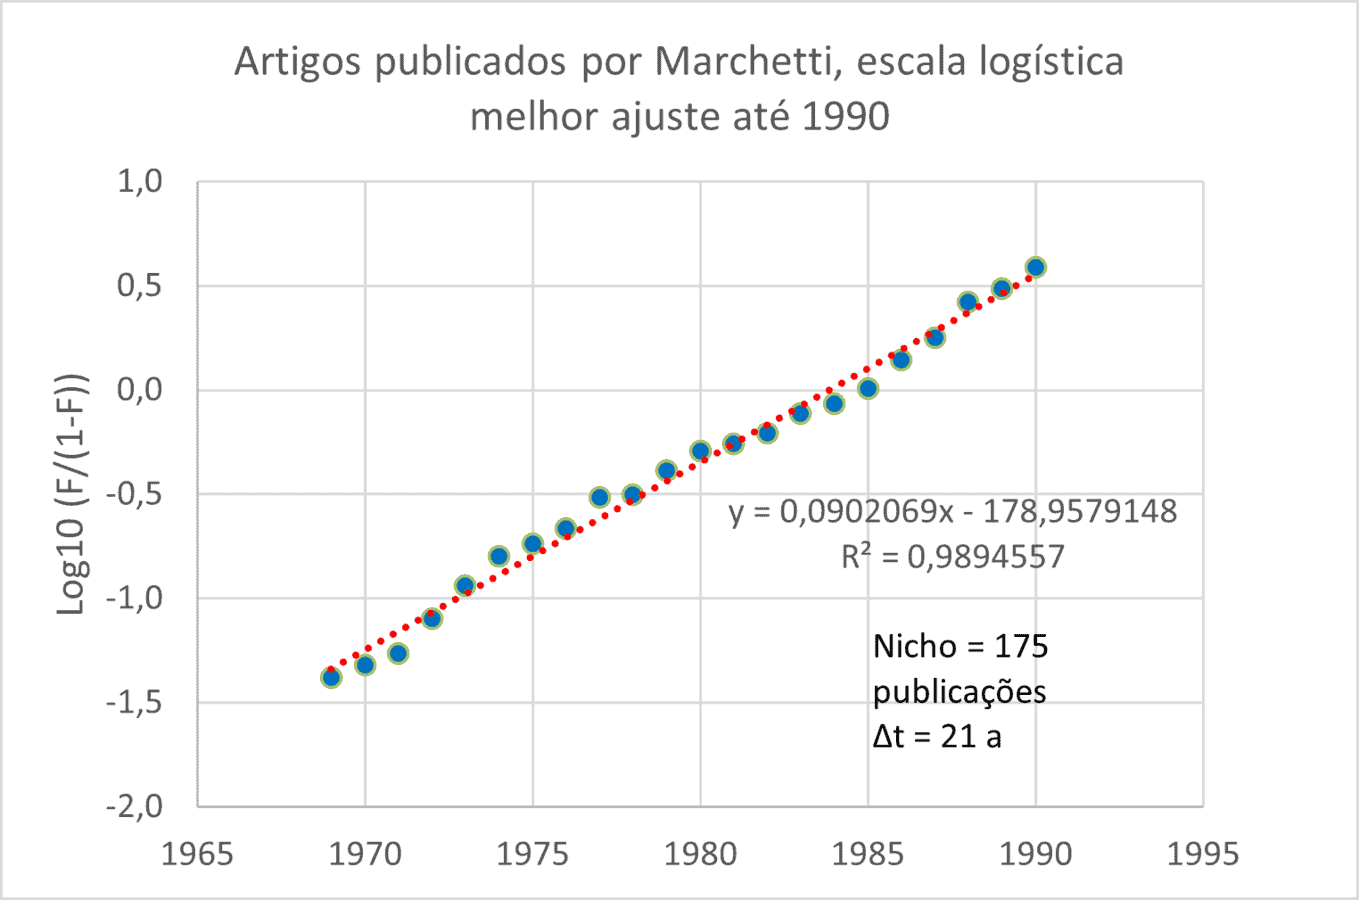 Técnica de melhor ajuste da logística aplicada a publicações de Marchetti na escala Fisher-PraY